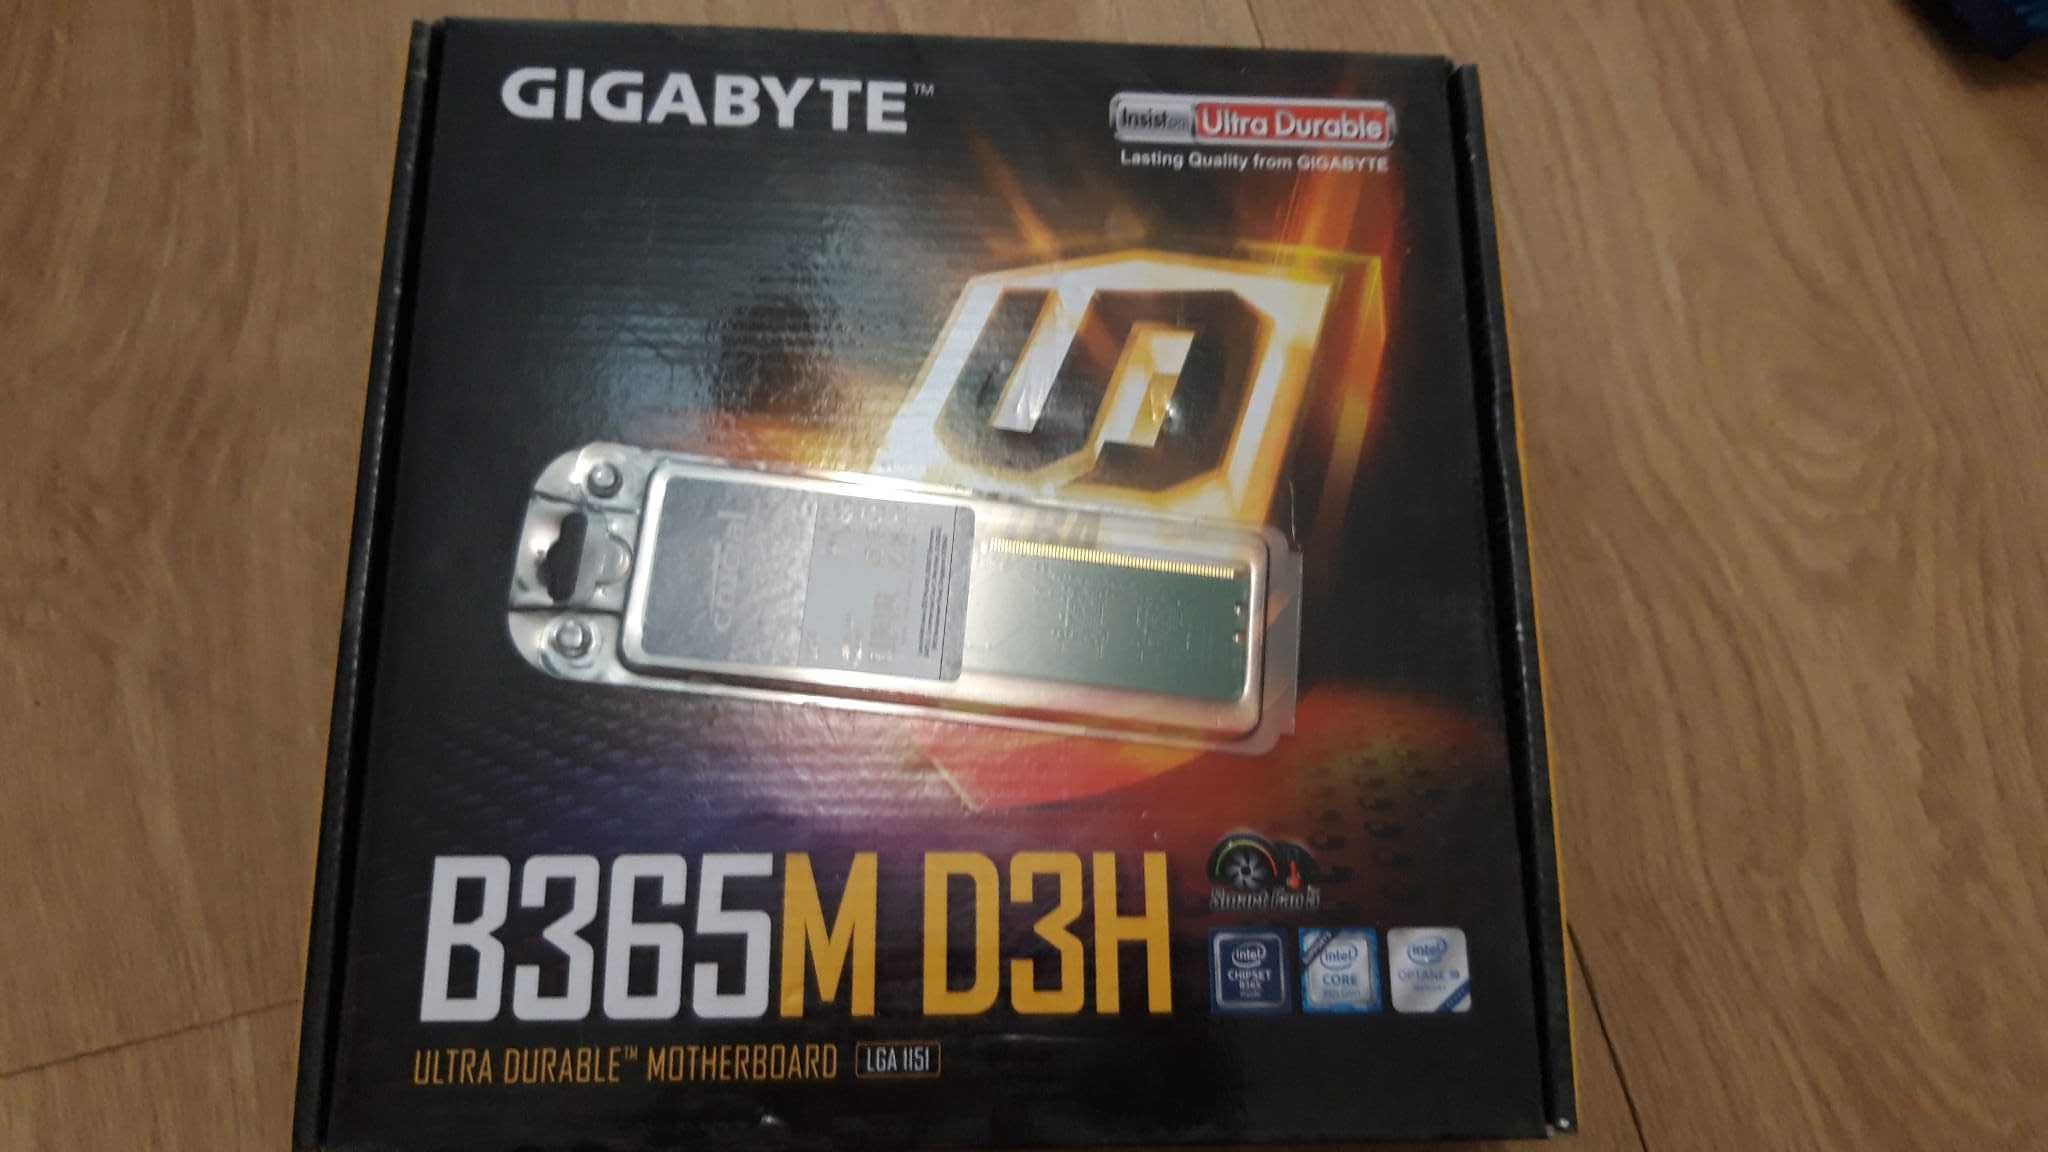 Kit gaming i5 8500 + GIGABYTE B365M D3H +8 gb ram